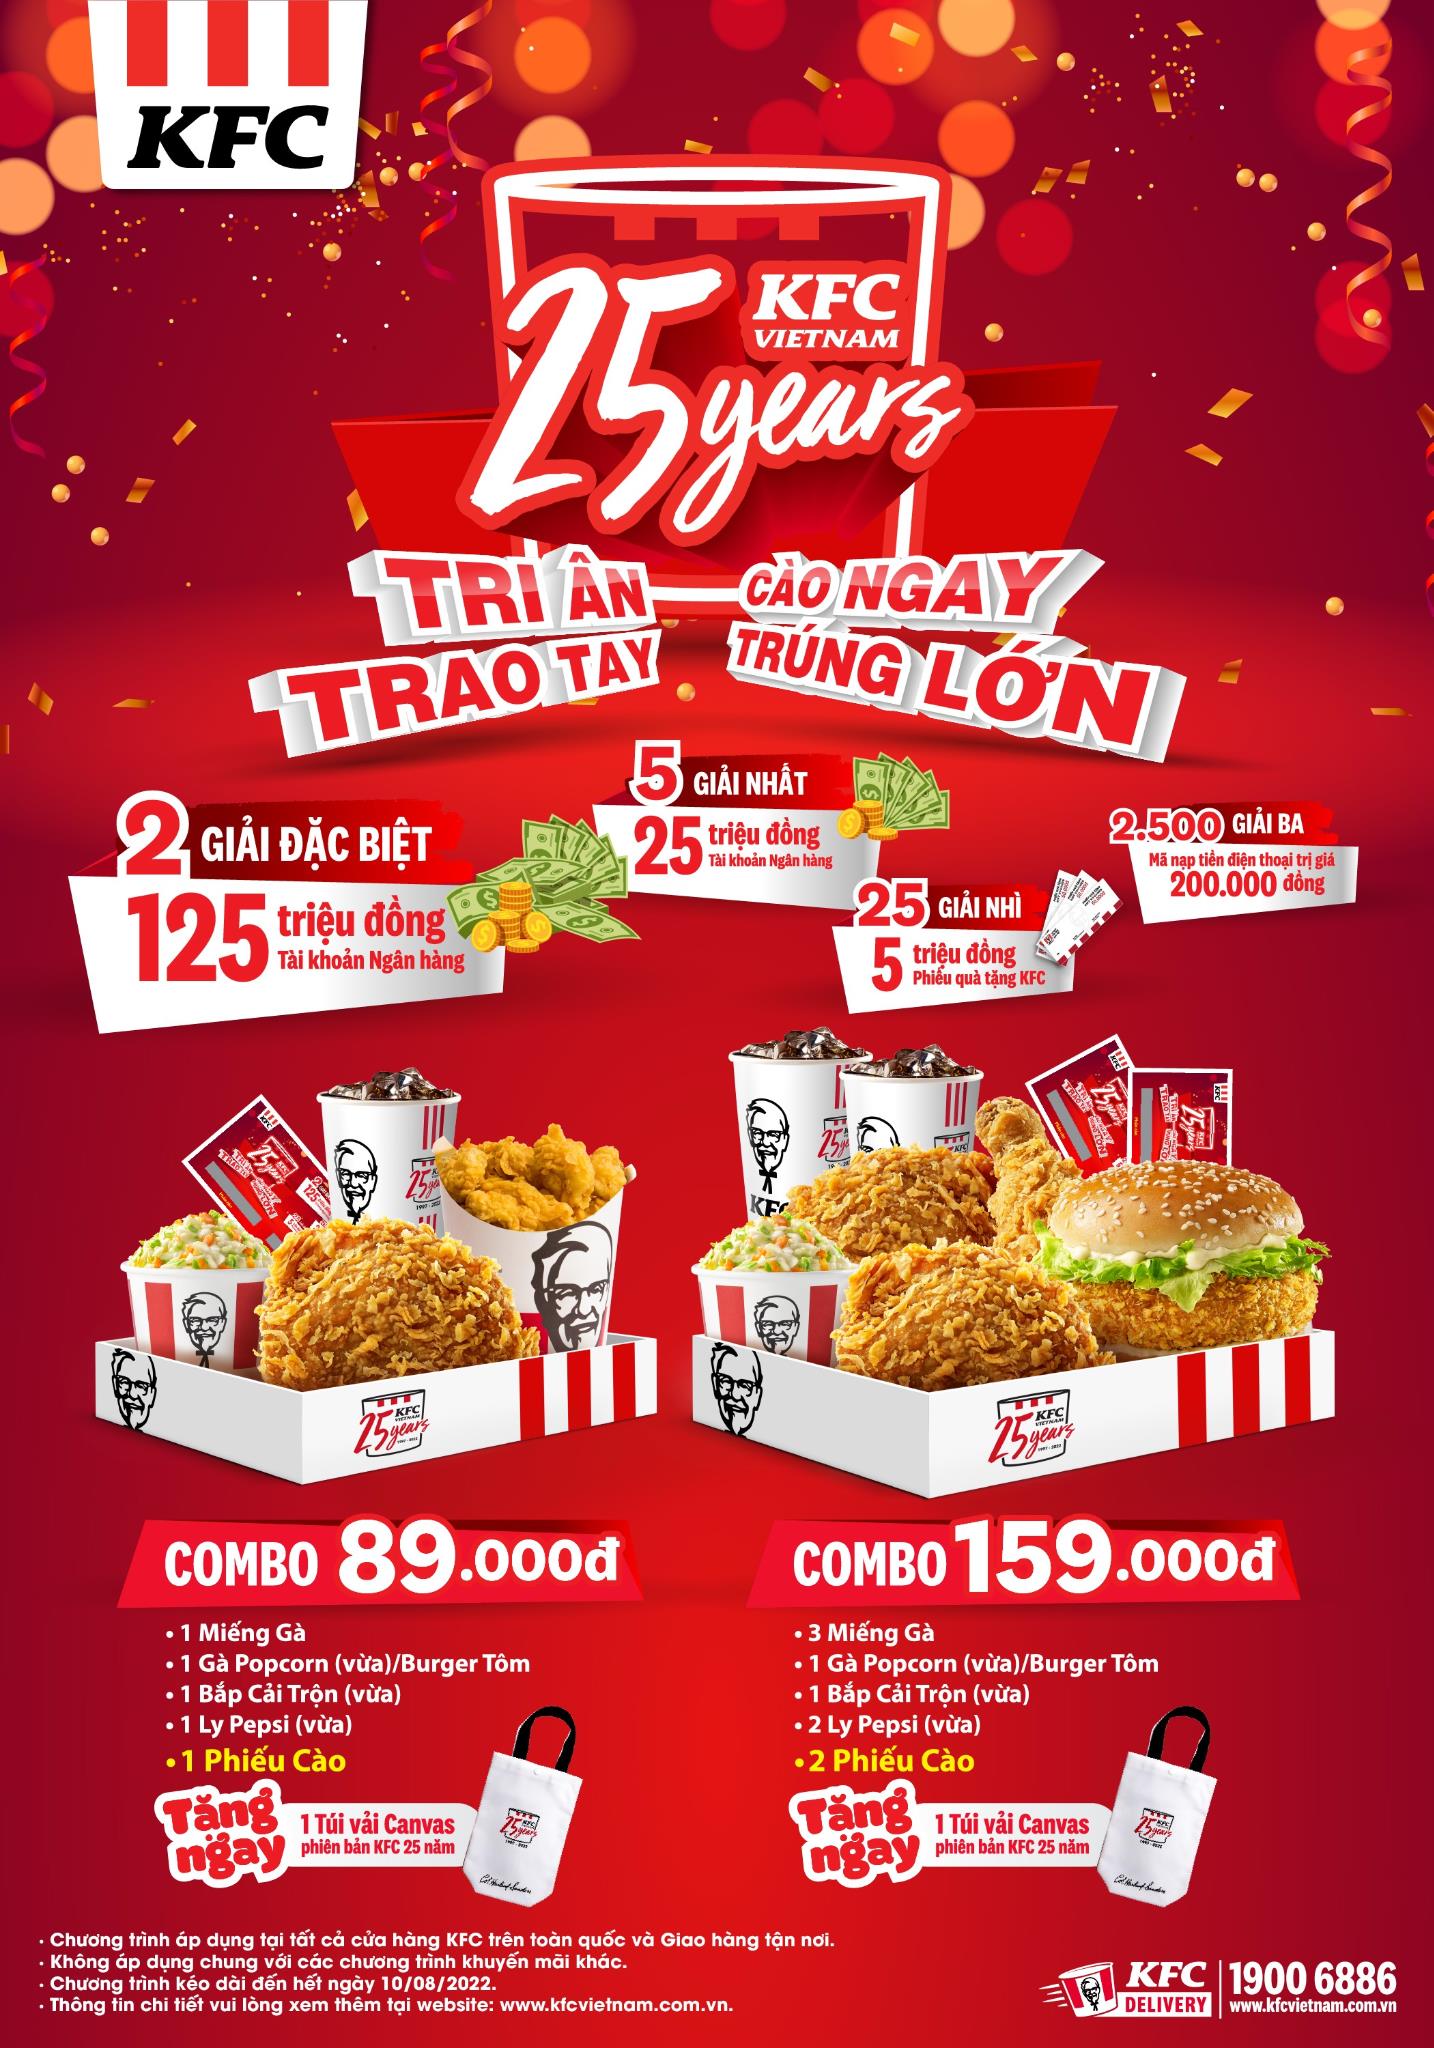 KFC kỷ niệm 25 năm có mặt tại Việt Nam với chuỗi ưu đãi hấp dẫn - Ảnh 1.